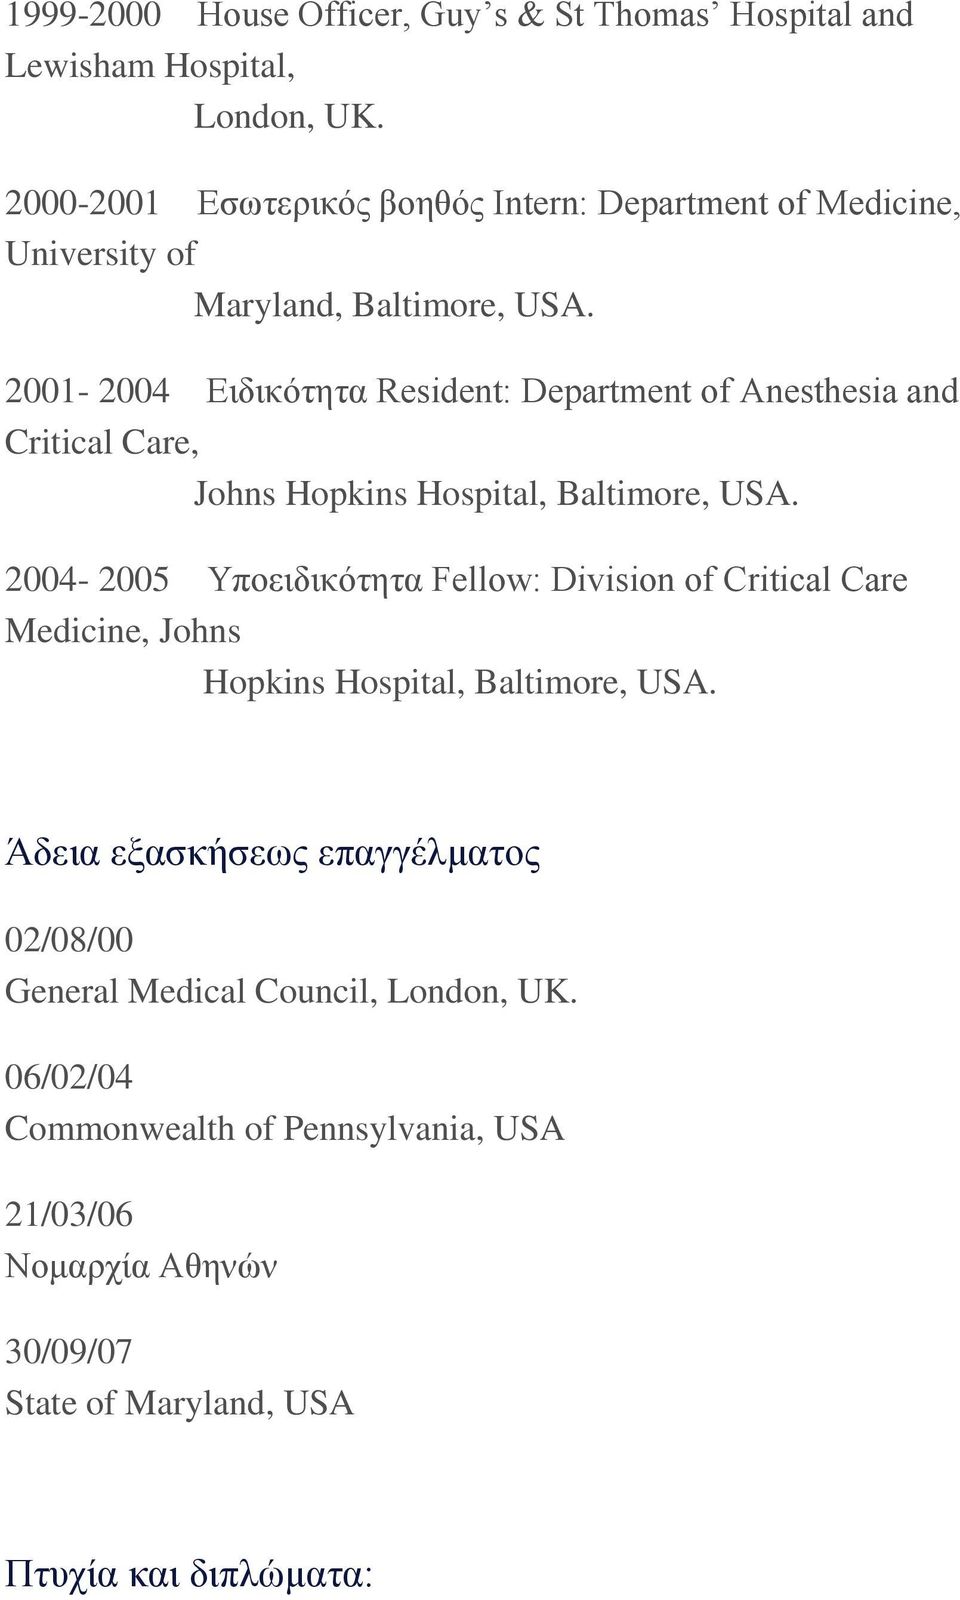 2001-2004 Ειδικότητα Resident: Department of Anesthesia and Critical Care, Johns Hopkins Hospital, Baltimore, USA.